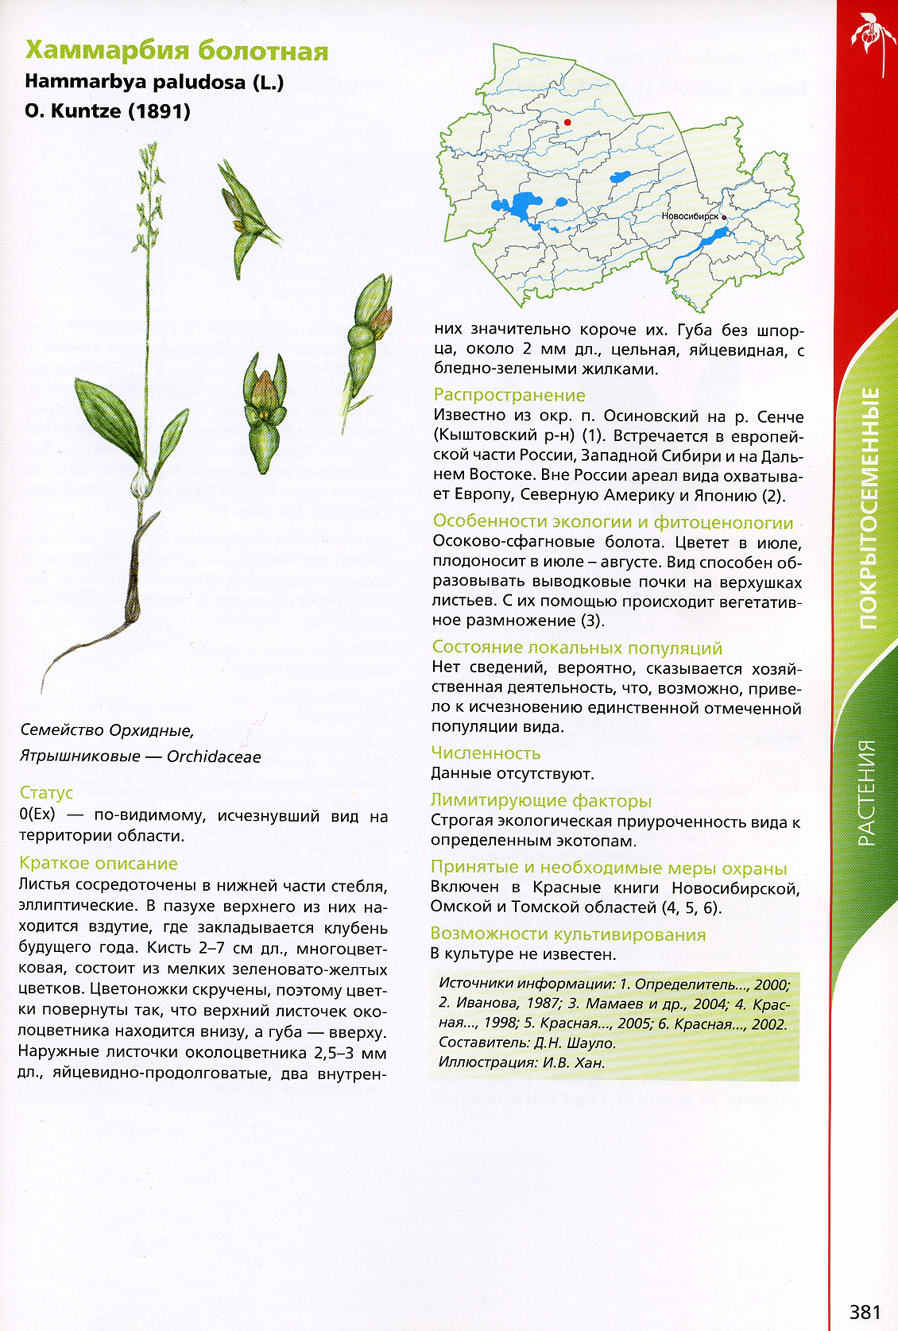 Омские растения в красной книге